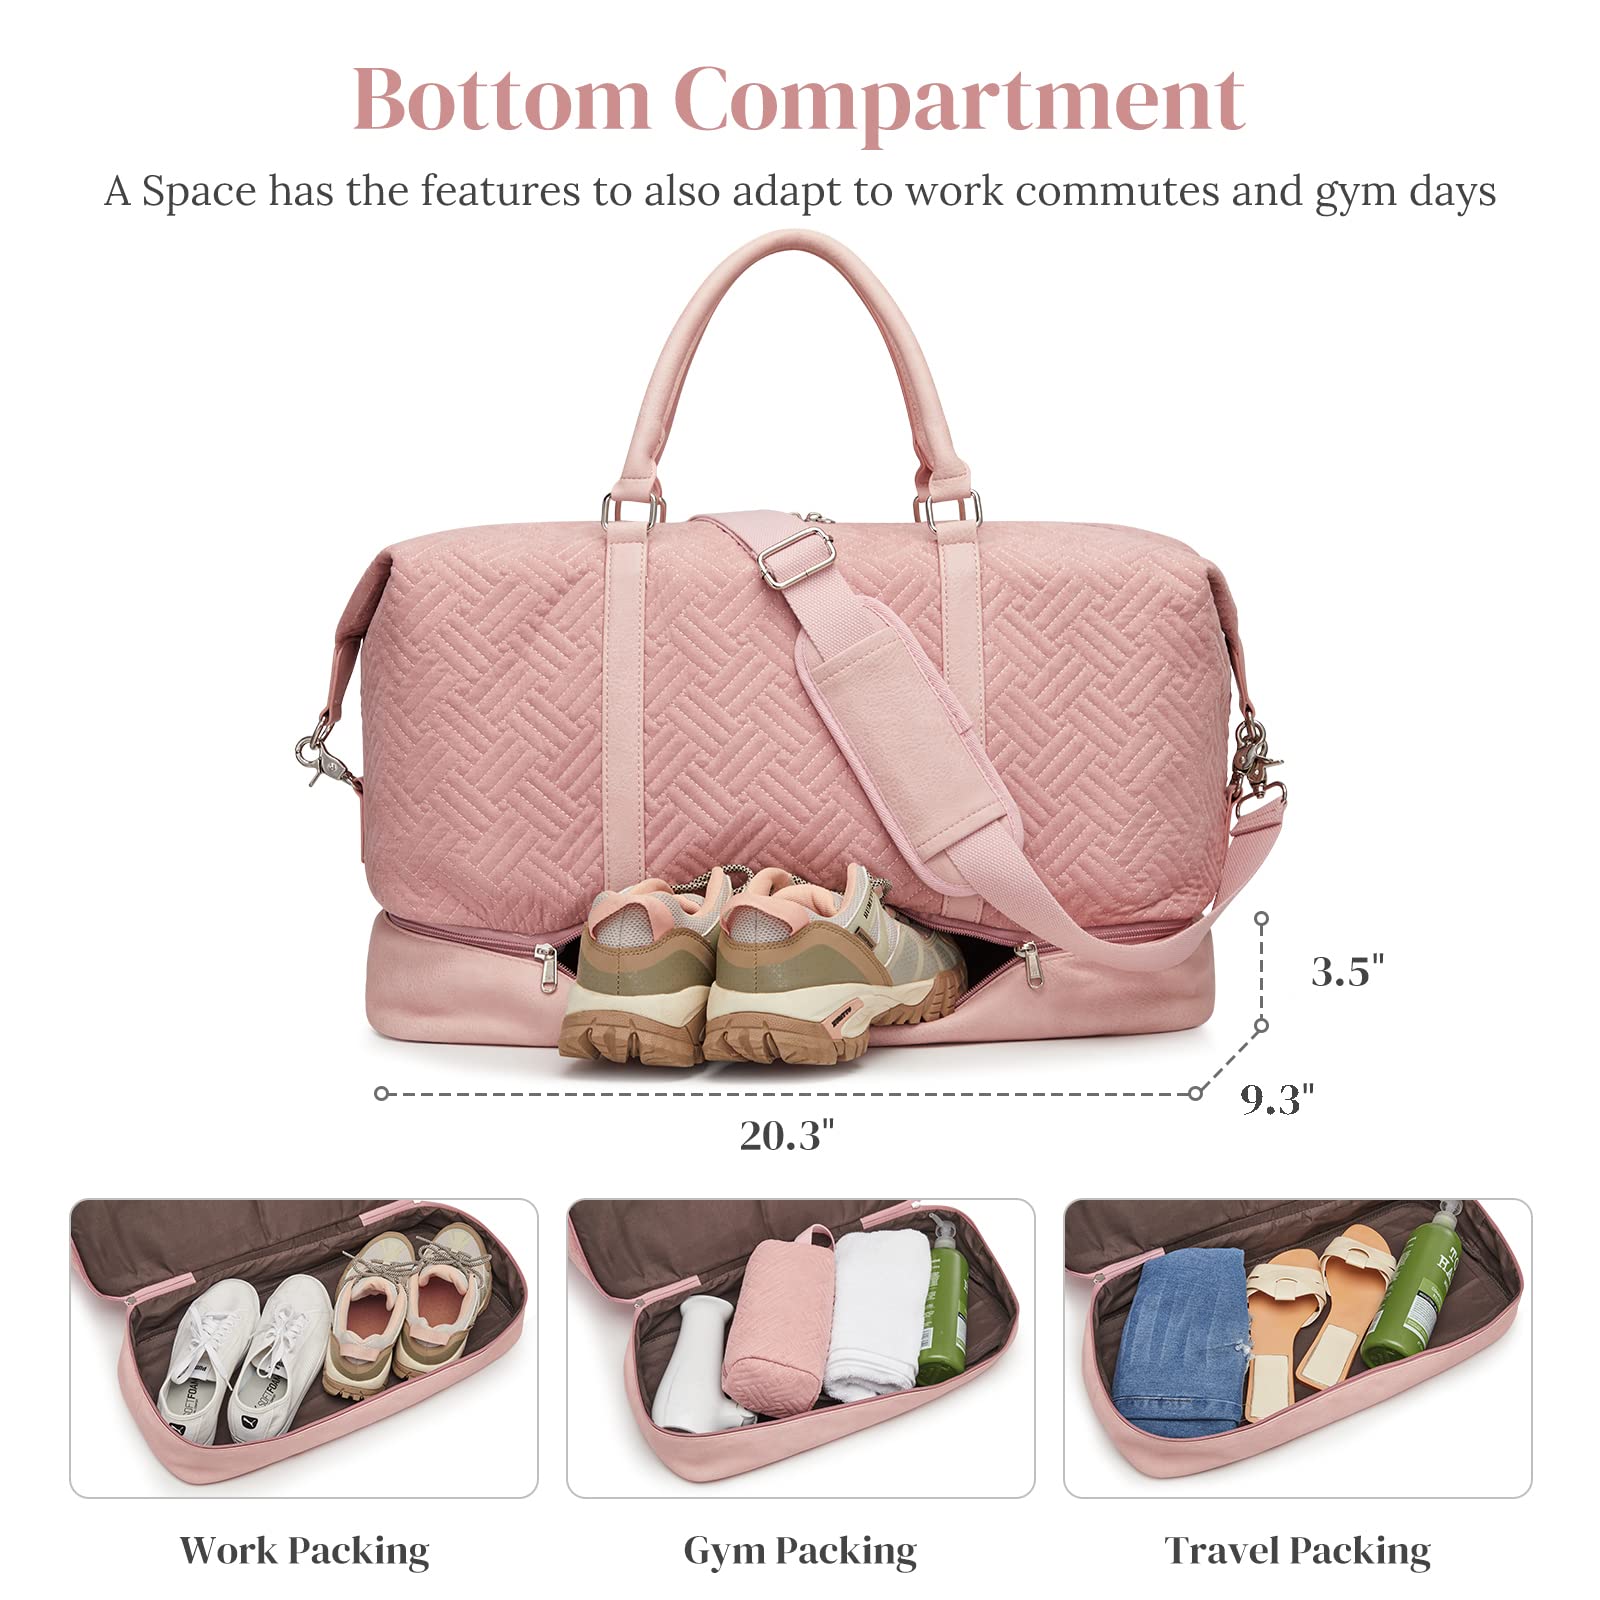 Women's 40L  3Pcs Set Travel Duffle Bag with Shoe Compartment